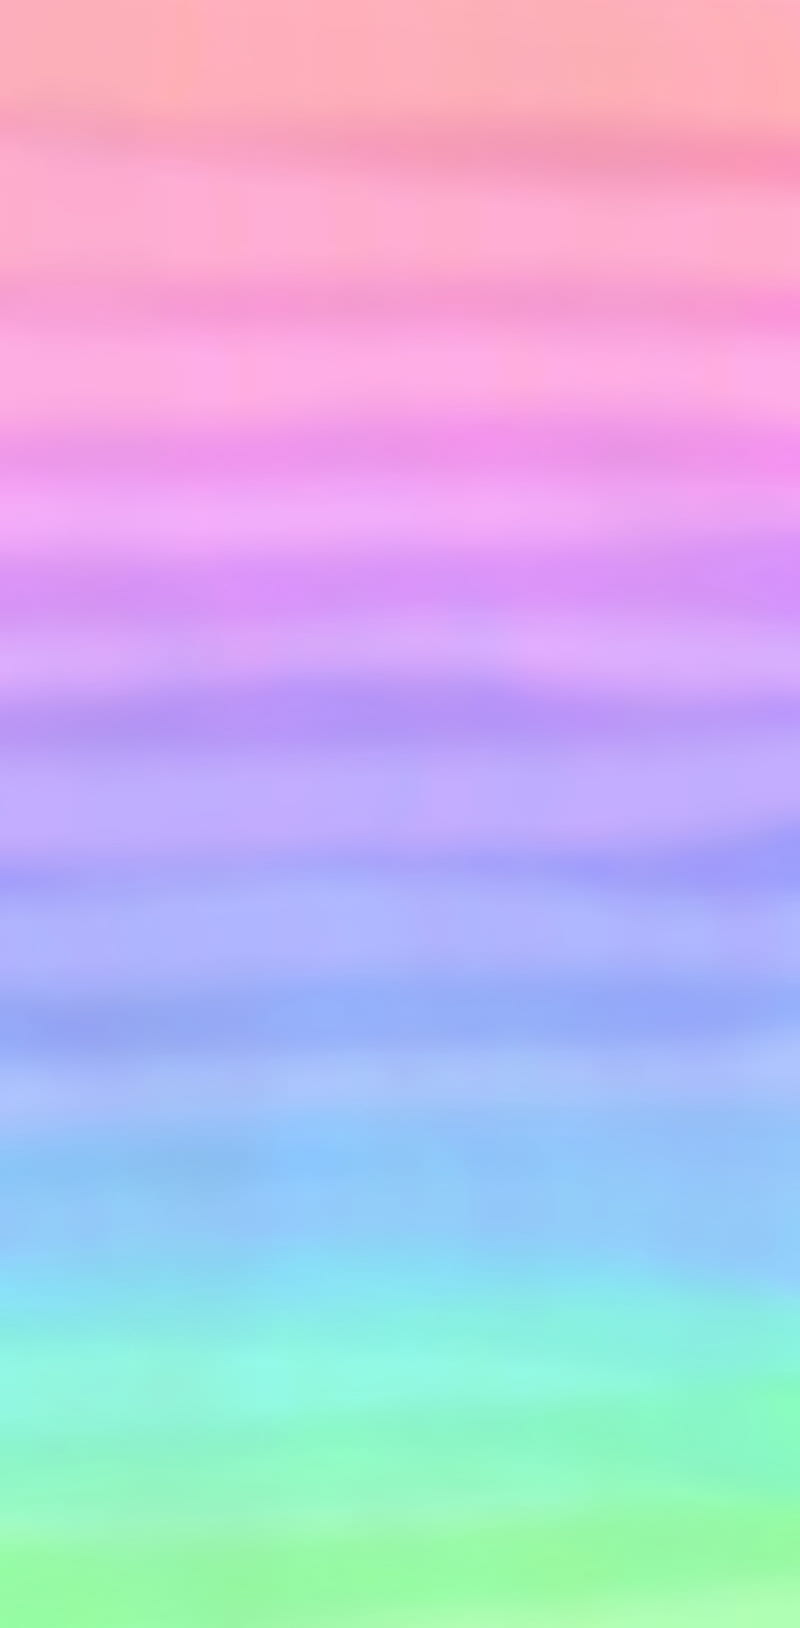 Với thiết kế đơn giản nhưng không kém phần tinh tế, nền đơn giản android màu tím Gradient chắc chắn sẽ làm hài lòng những tín đồ yêu thích sự mới mẻ và tươi sáng. Hãy khám phá hình ảnh liên quan ngay để cảm nhận sự kết hợp tuyệt vời của Rainbow ombre và tông màu tím thanh lịch trên màn hình điện thoại của mình.